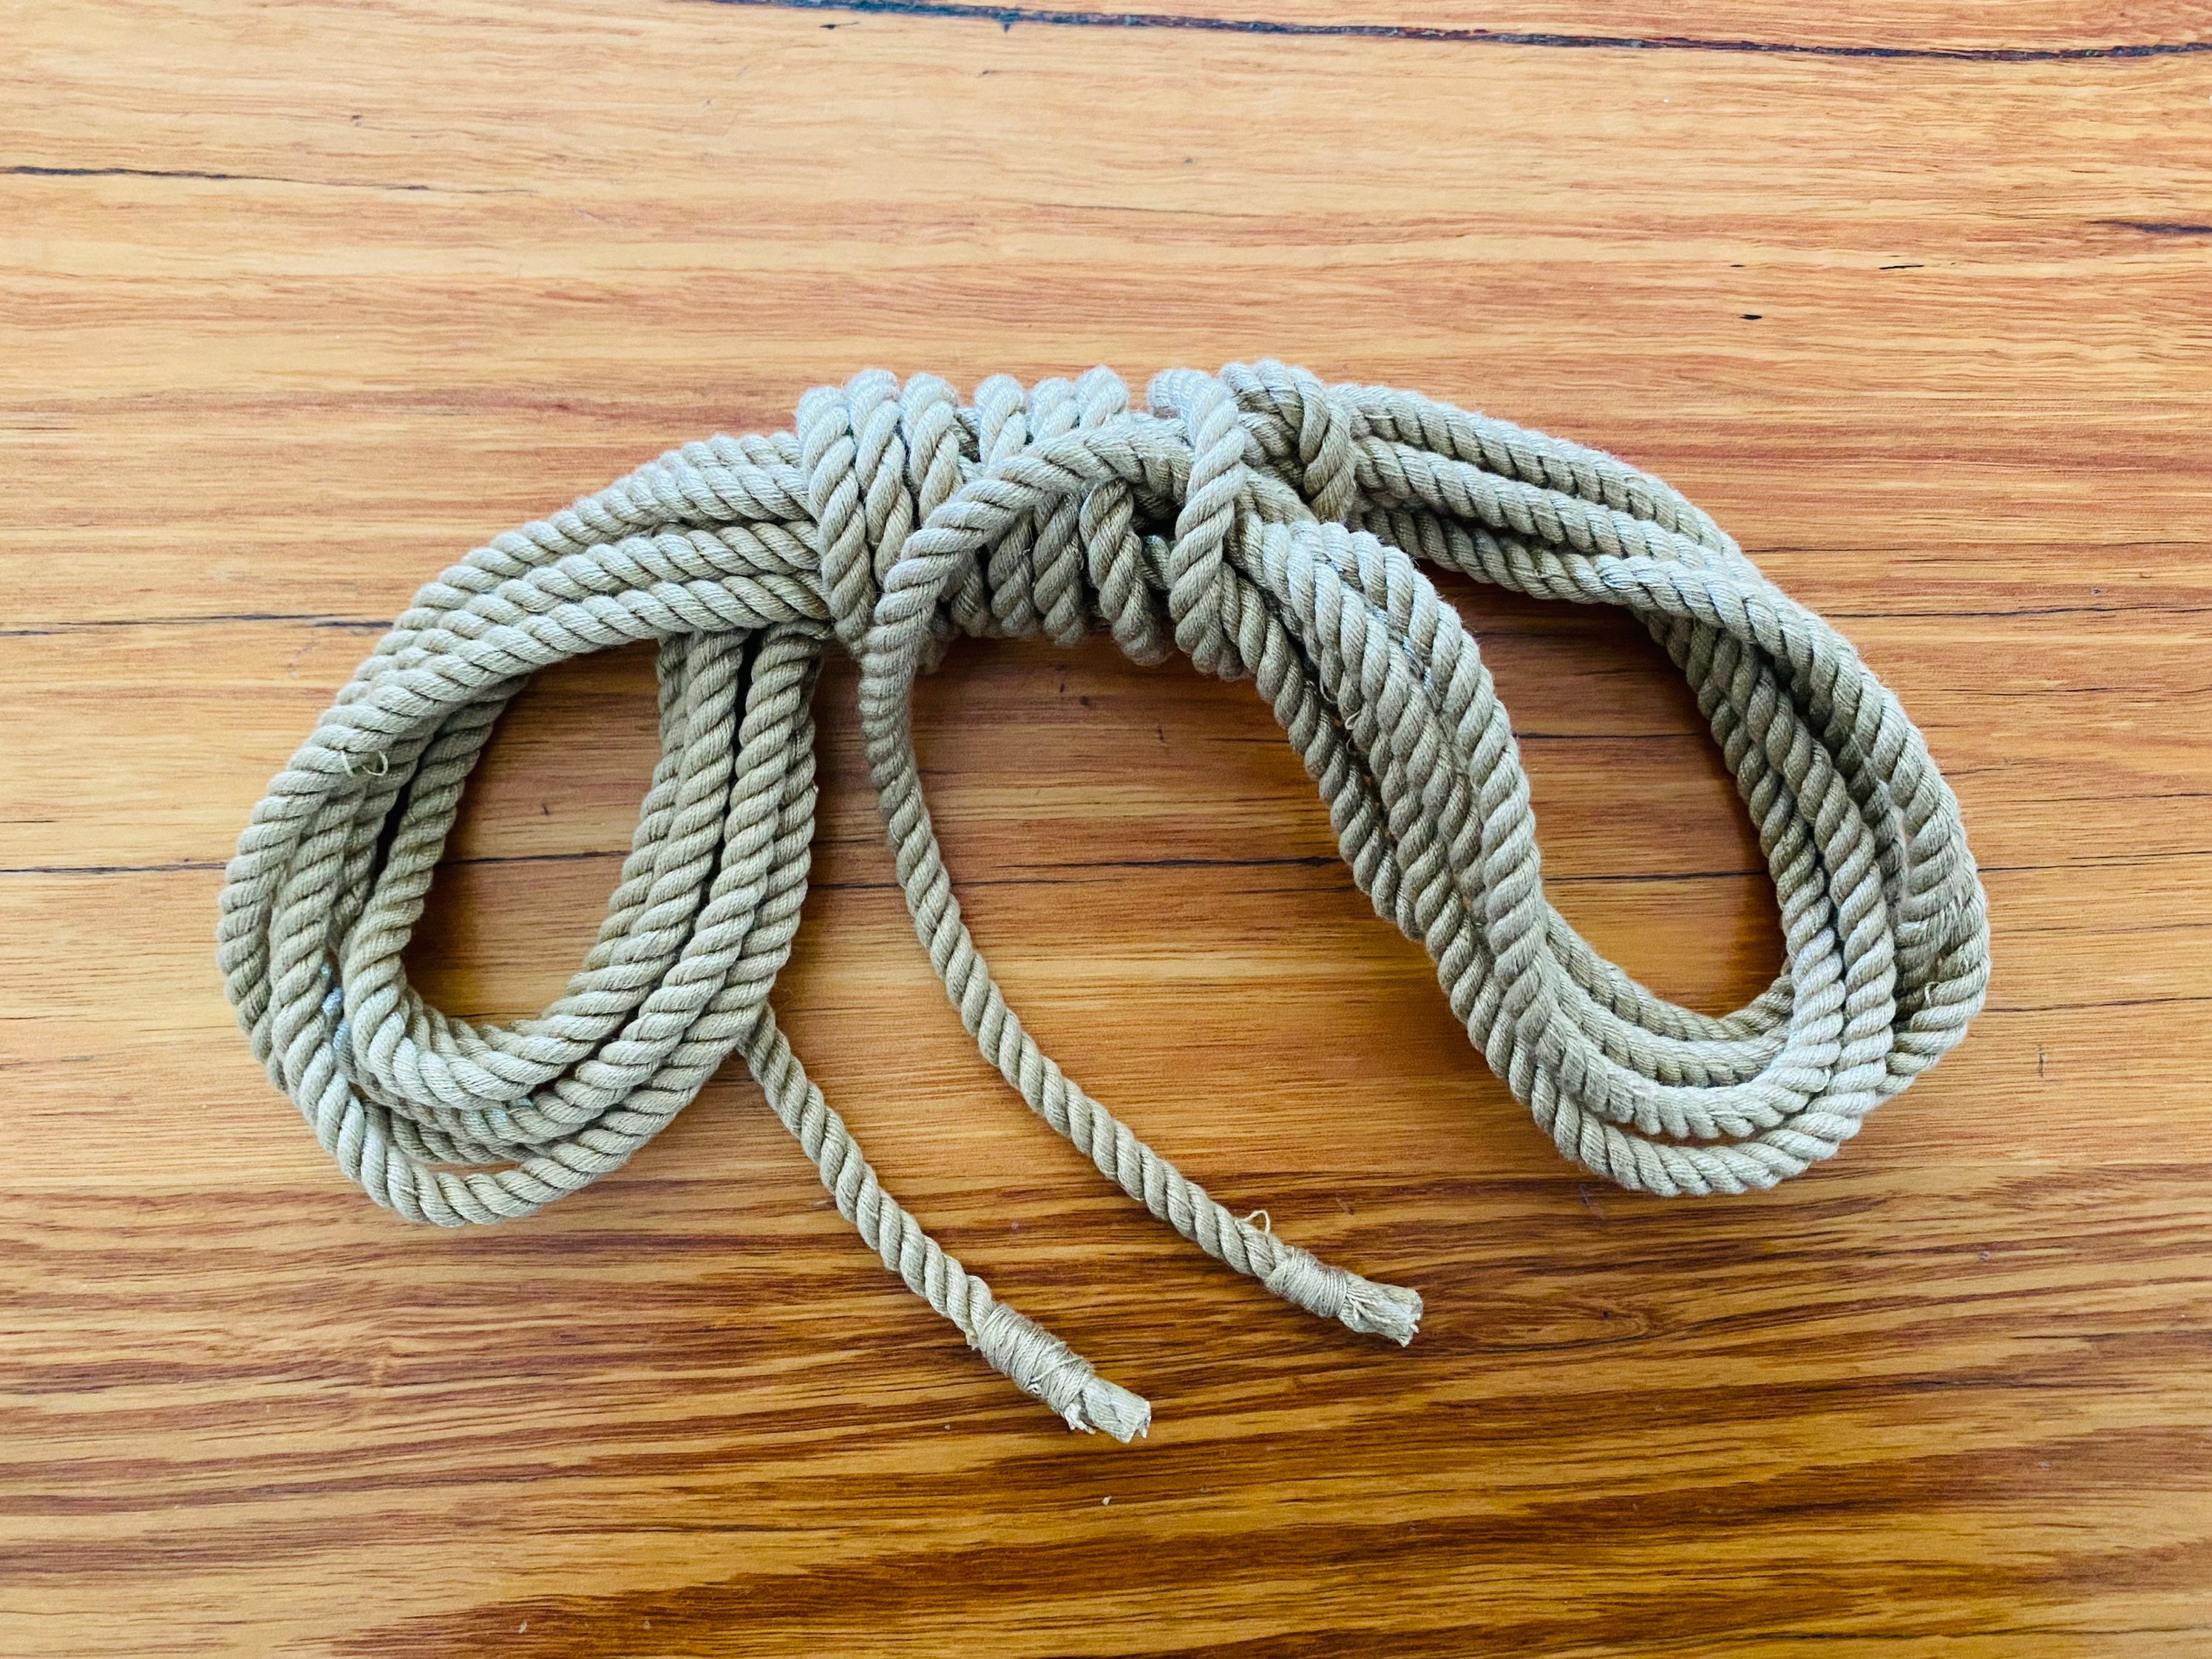 Hemp Shibari Rope 15' – deGiotto Rope